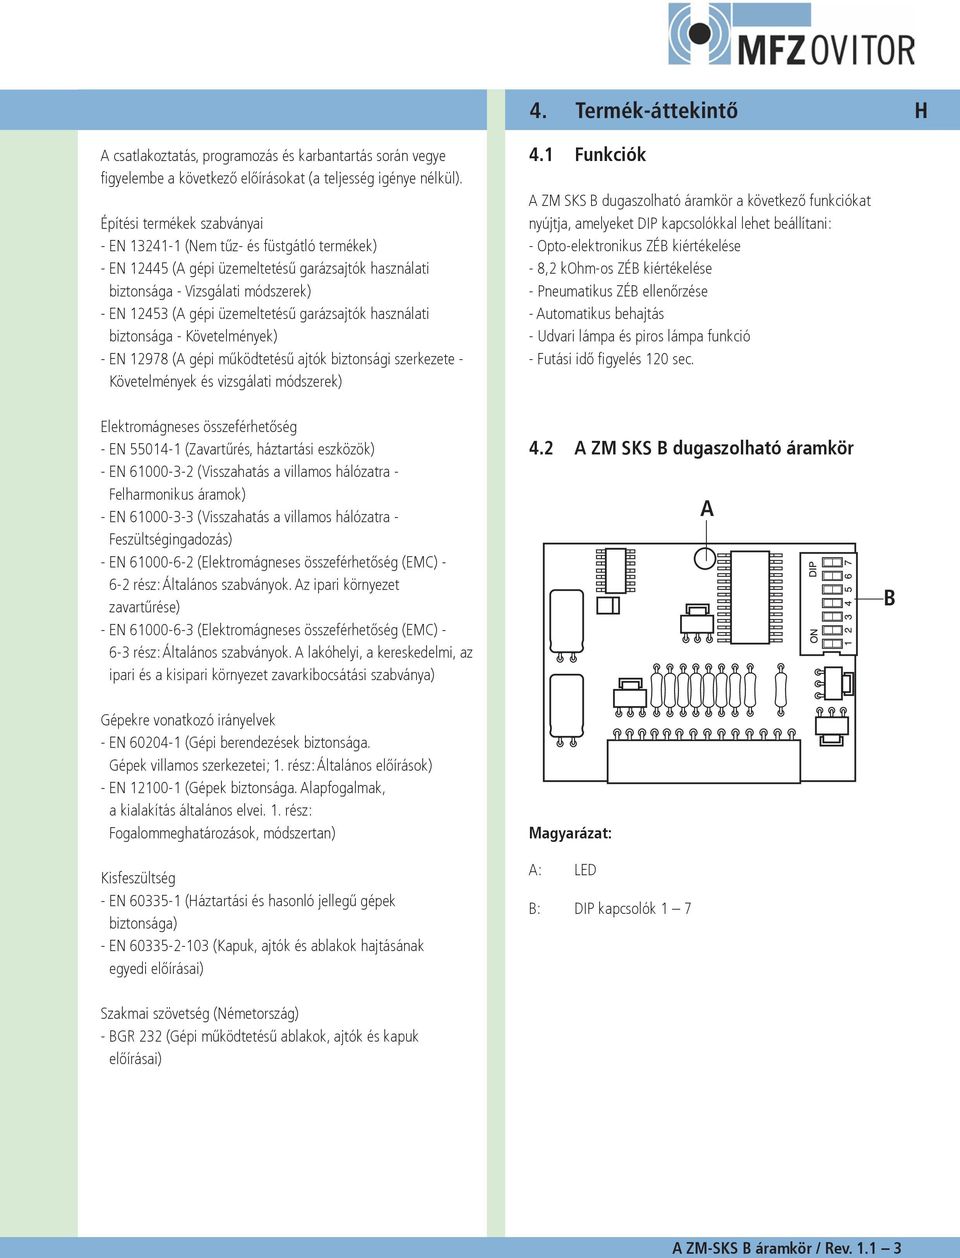 használati biztonsága Követelmények) EN 12978 (A gépi működtetésű ajtók biztonsági szerkezete Követelmények és vizsgálati módszerek) 4.